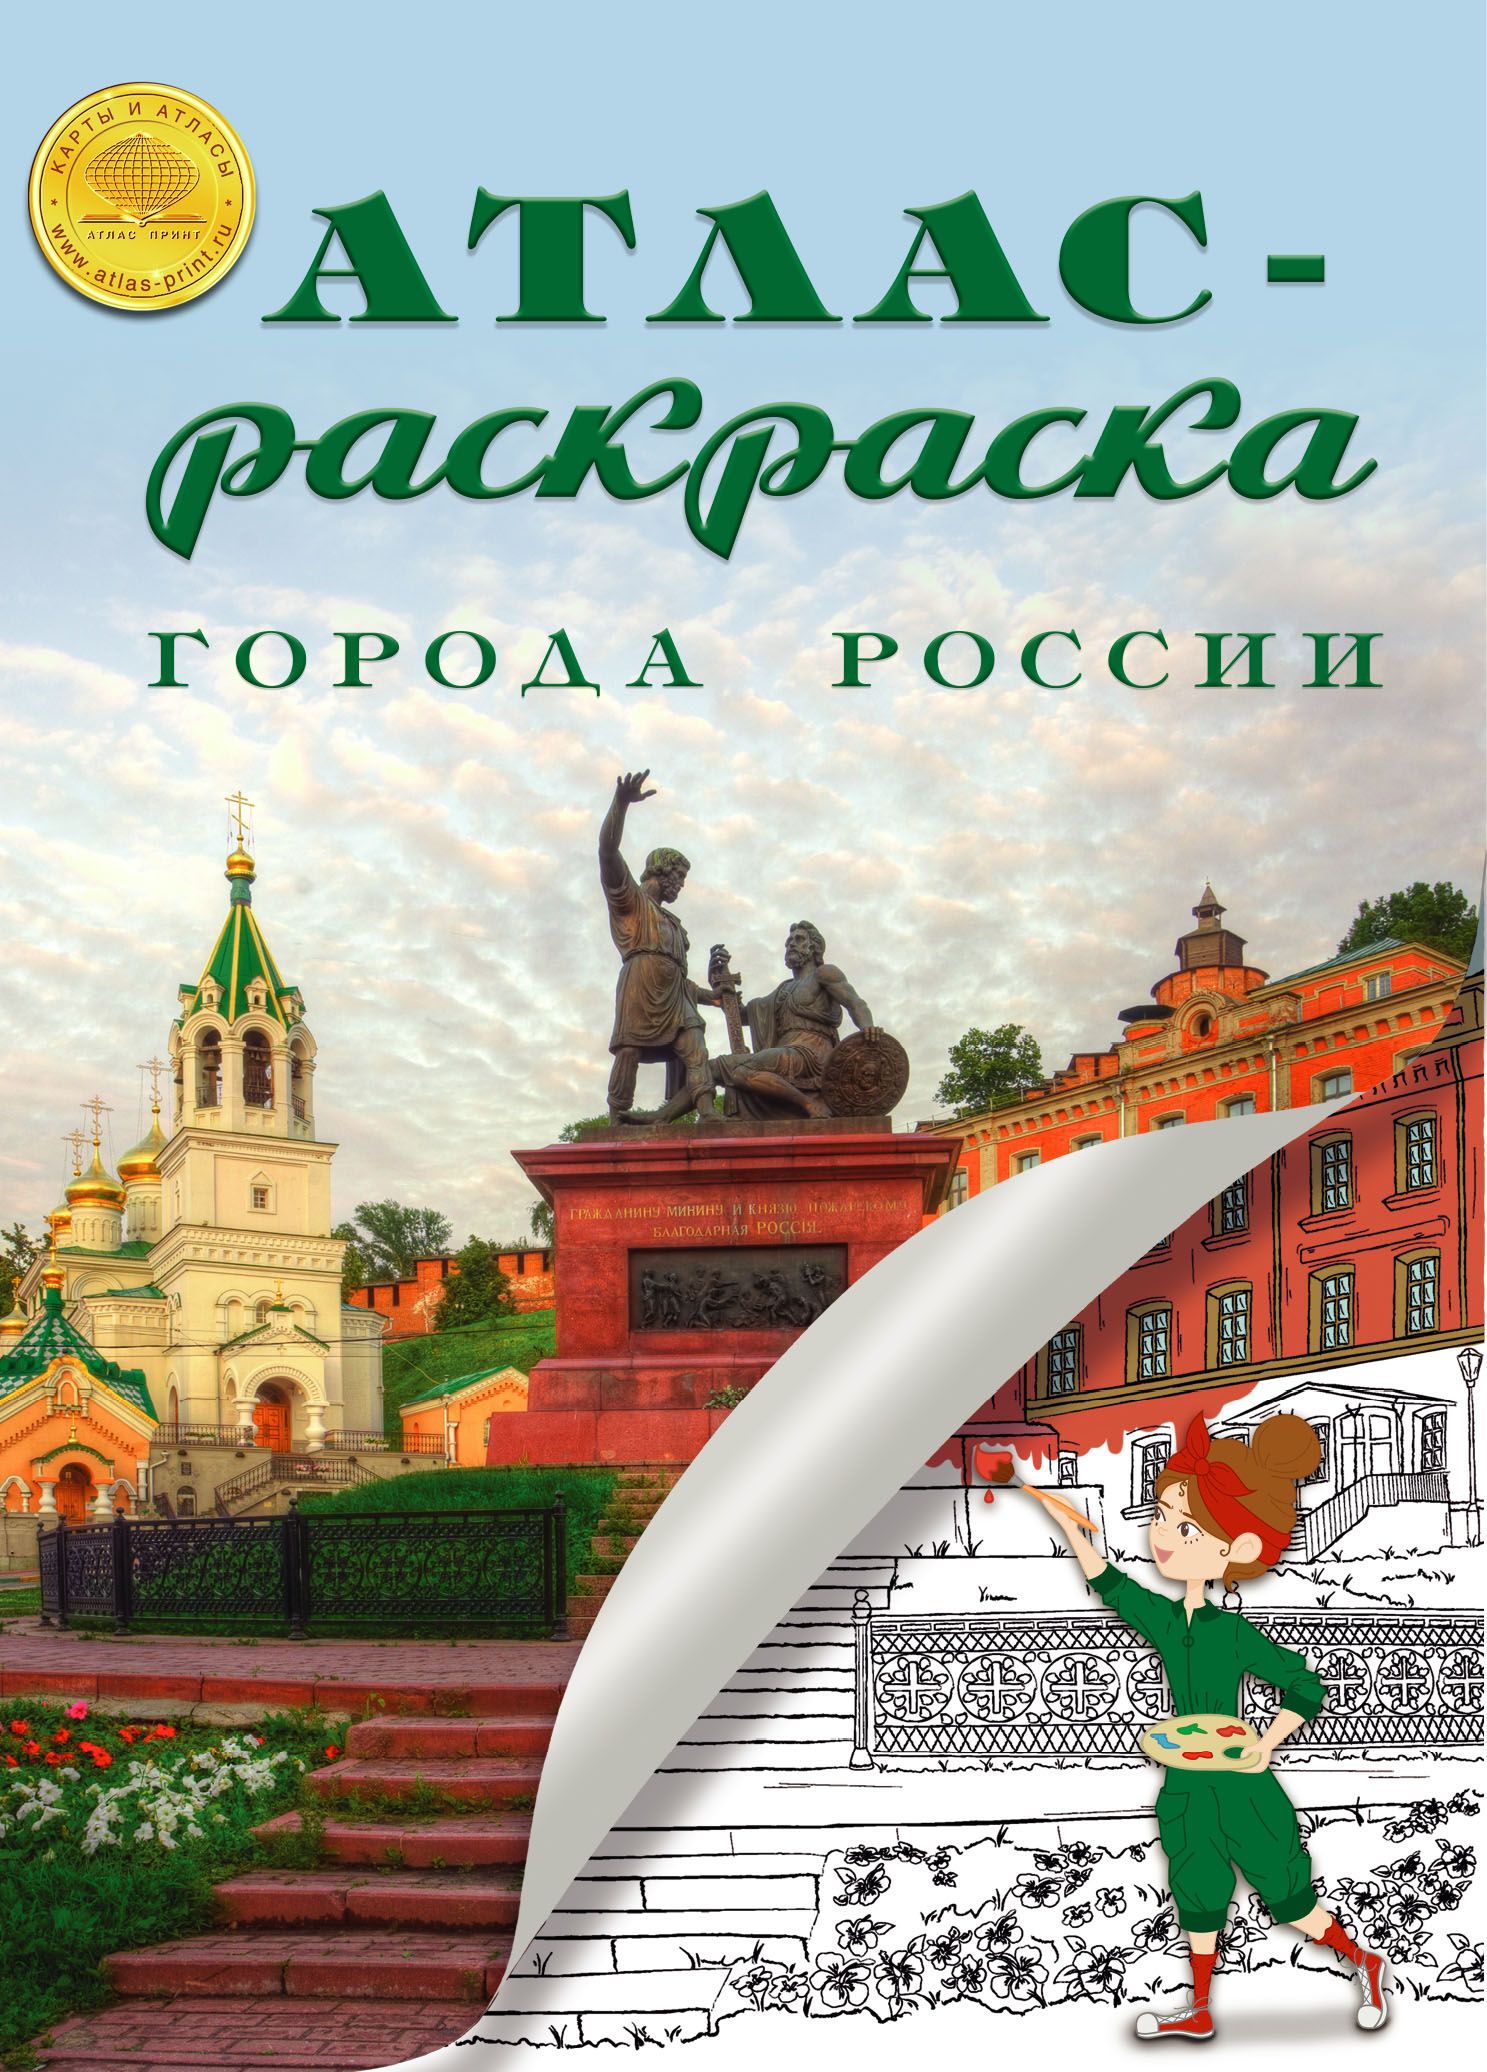 Раскраска Города России Атлас Принт 24 страницы